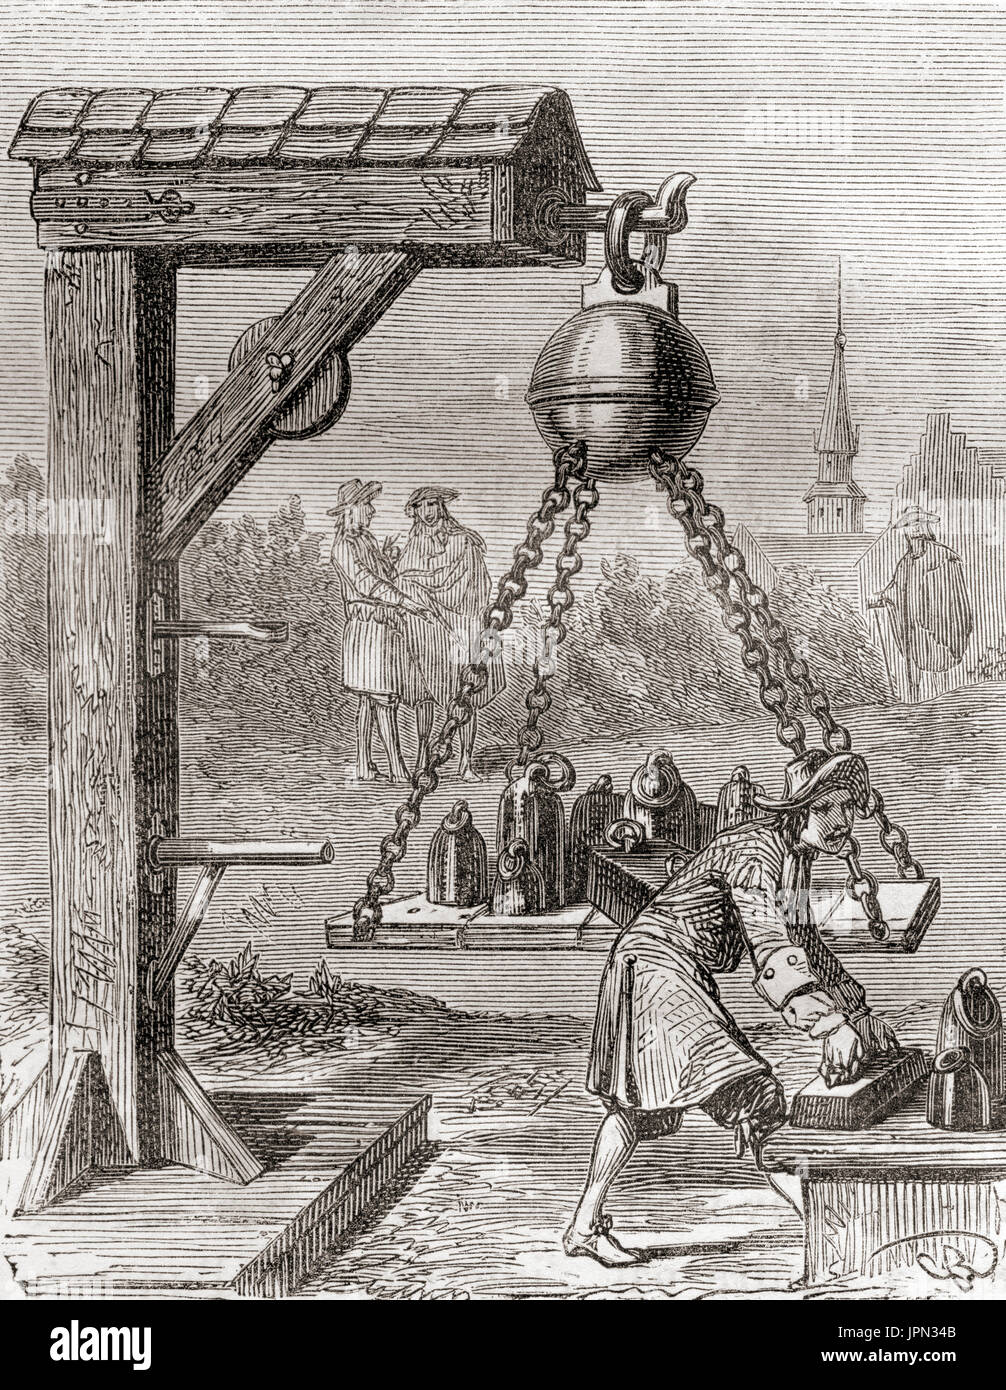 Gli emisferi di Magdeburgo, una coppia di grandi emisferi di rame, con bordi di accoppiamento che sono state sigillate con grasso e l'aria pompata fuori le sfere contenute un vuoto e non può essere tirato oltre da squadre di cavalli. Progettato da uno scienziato tedesco e il sindaco di Magdeburgo, Otto von Guericke, per dimostrare la pompa aria che egli aveva inventato e il concetto di pressione atmosferica. Otto von Guericke originariamente scritto Gericke, 1602 - 1686. Scienziato tedesco, inventore e politico. Da Les Merveilles de la Science, pubblicato 1870. Foto Stock